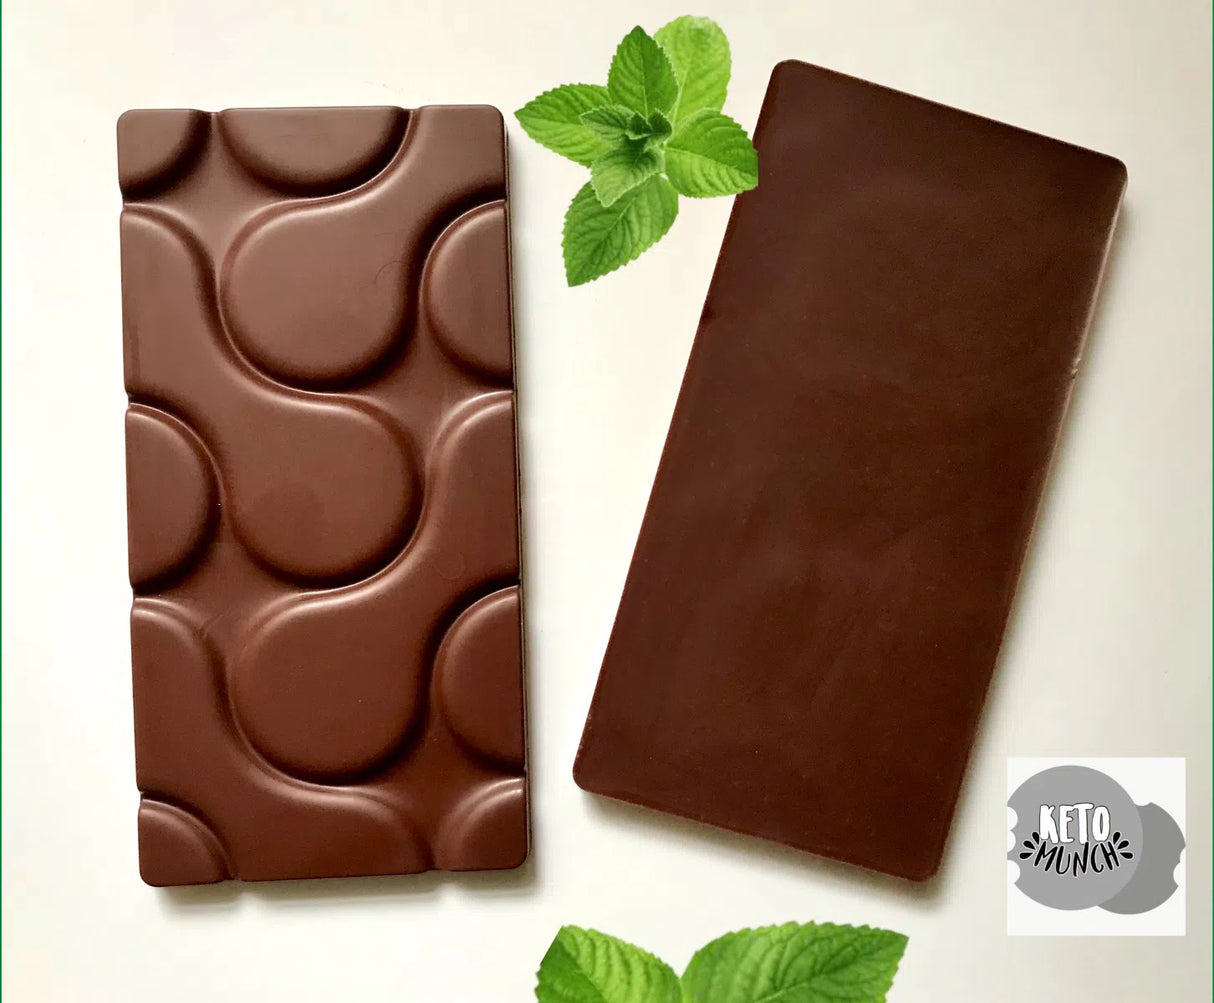 Keto Chocolate Bar - Mint 90g (No Added Sugar)